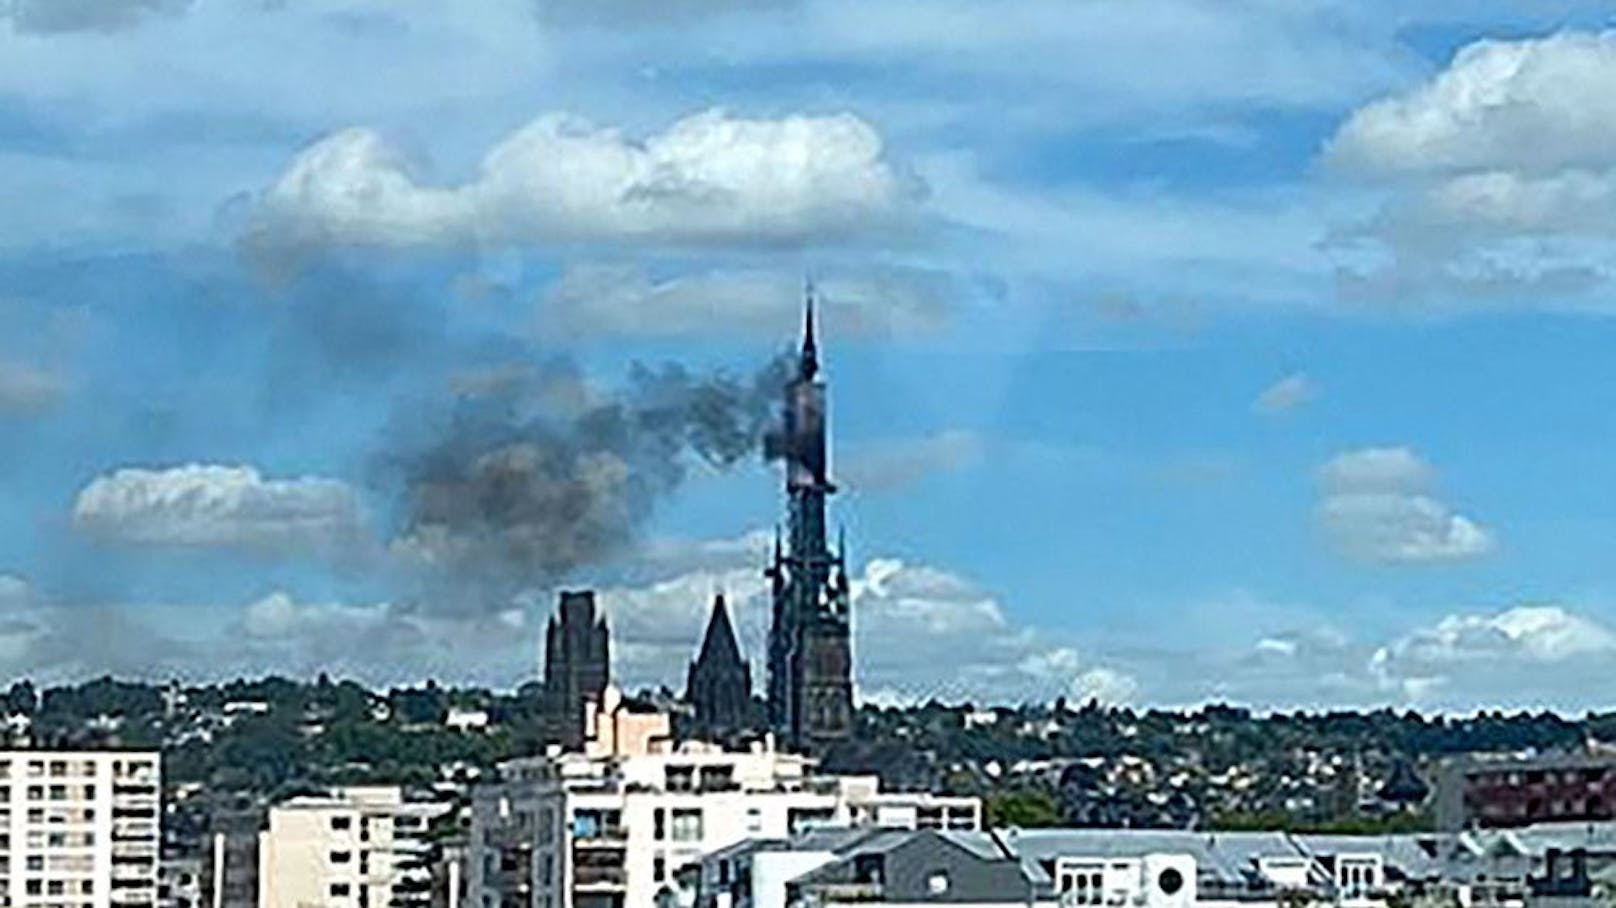 Kathedrale von Rouen brennt – Großeinsatz läuft